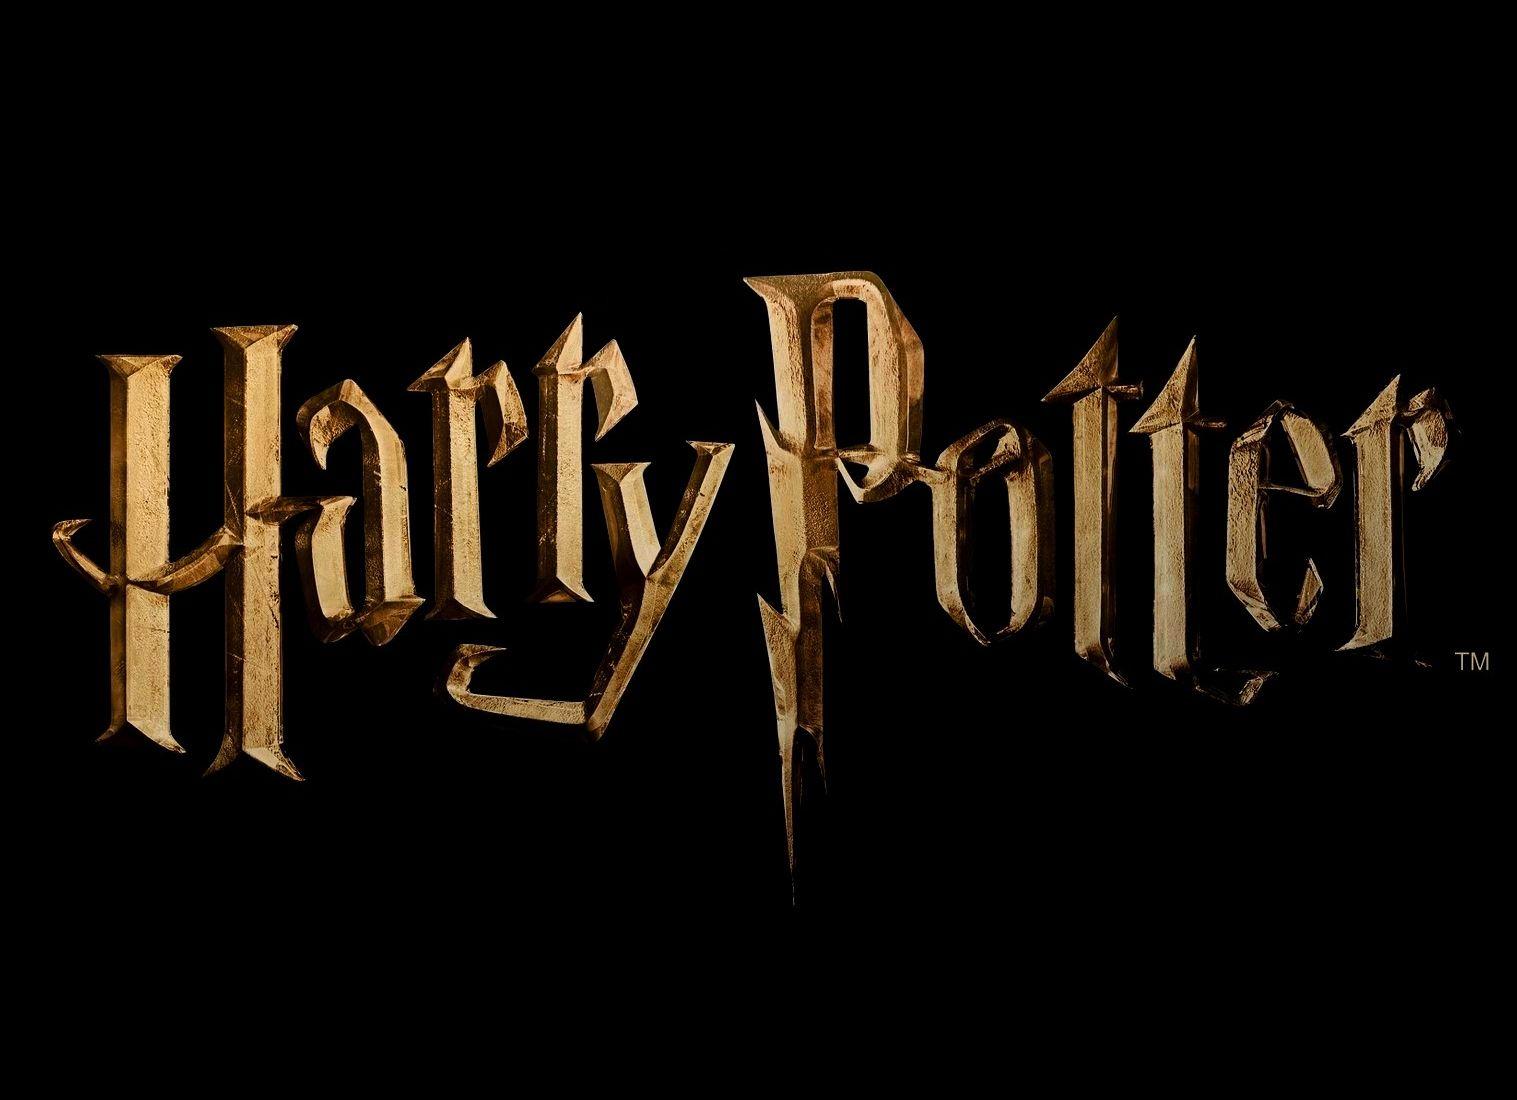 Harry Potter Logo - Image - Wizarding-world-of-harry-potter-logo.jpg | Harry Potter Wiki ...